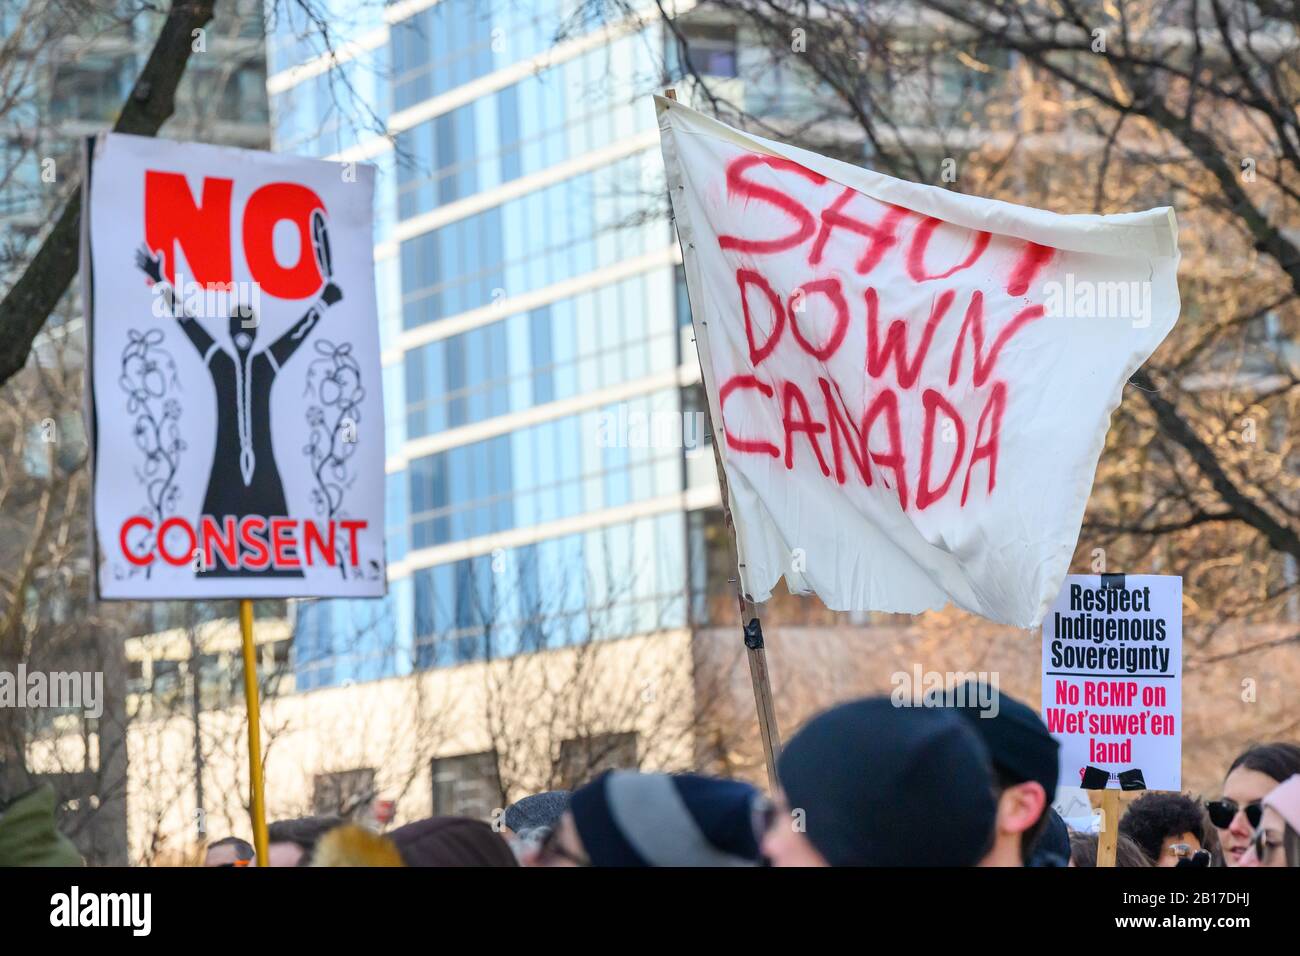 Señales que declaran no Consentimiento y que se cierra Canadá se muestran orgullosamente durante una protesta en solidaridad con el Wet'suwet'en. Foto de stock